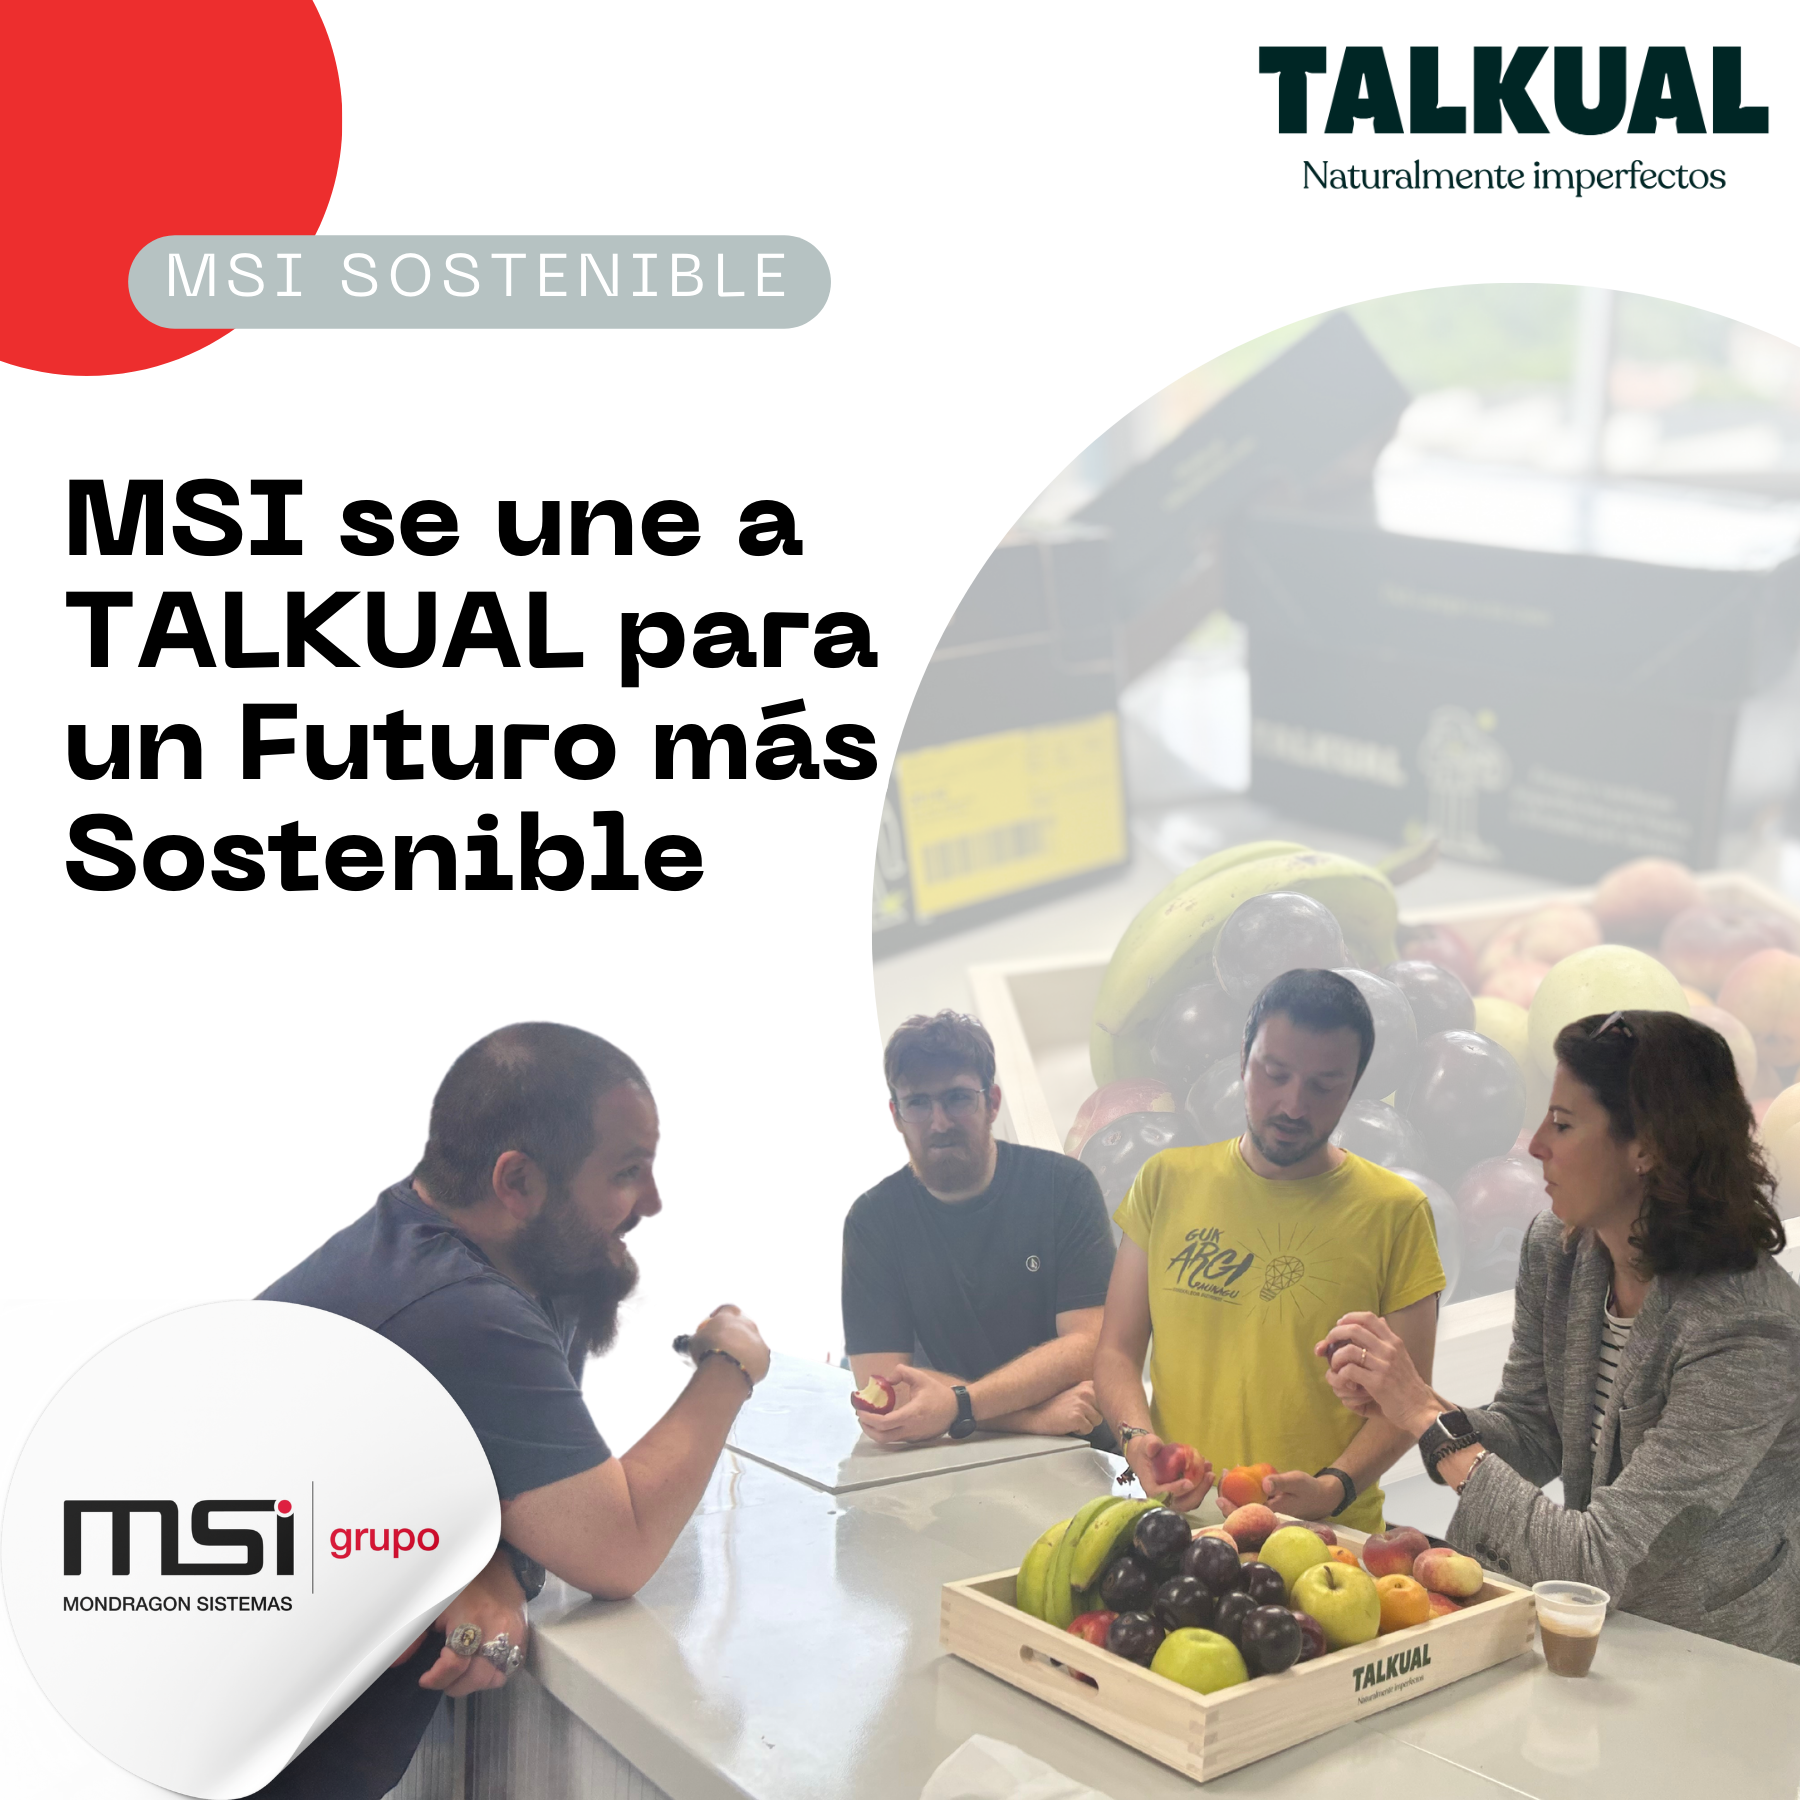 MSI se une a TALKUAL para Promover la Sostenibilidad y Reducir el Desperdicio Alimentario